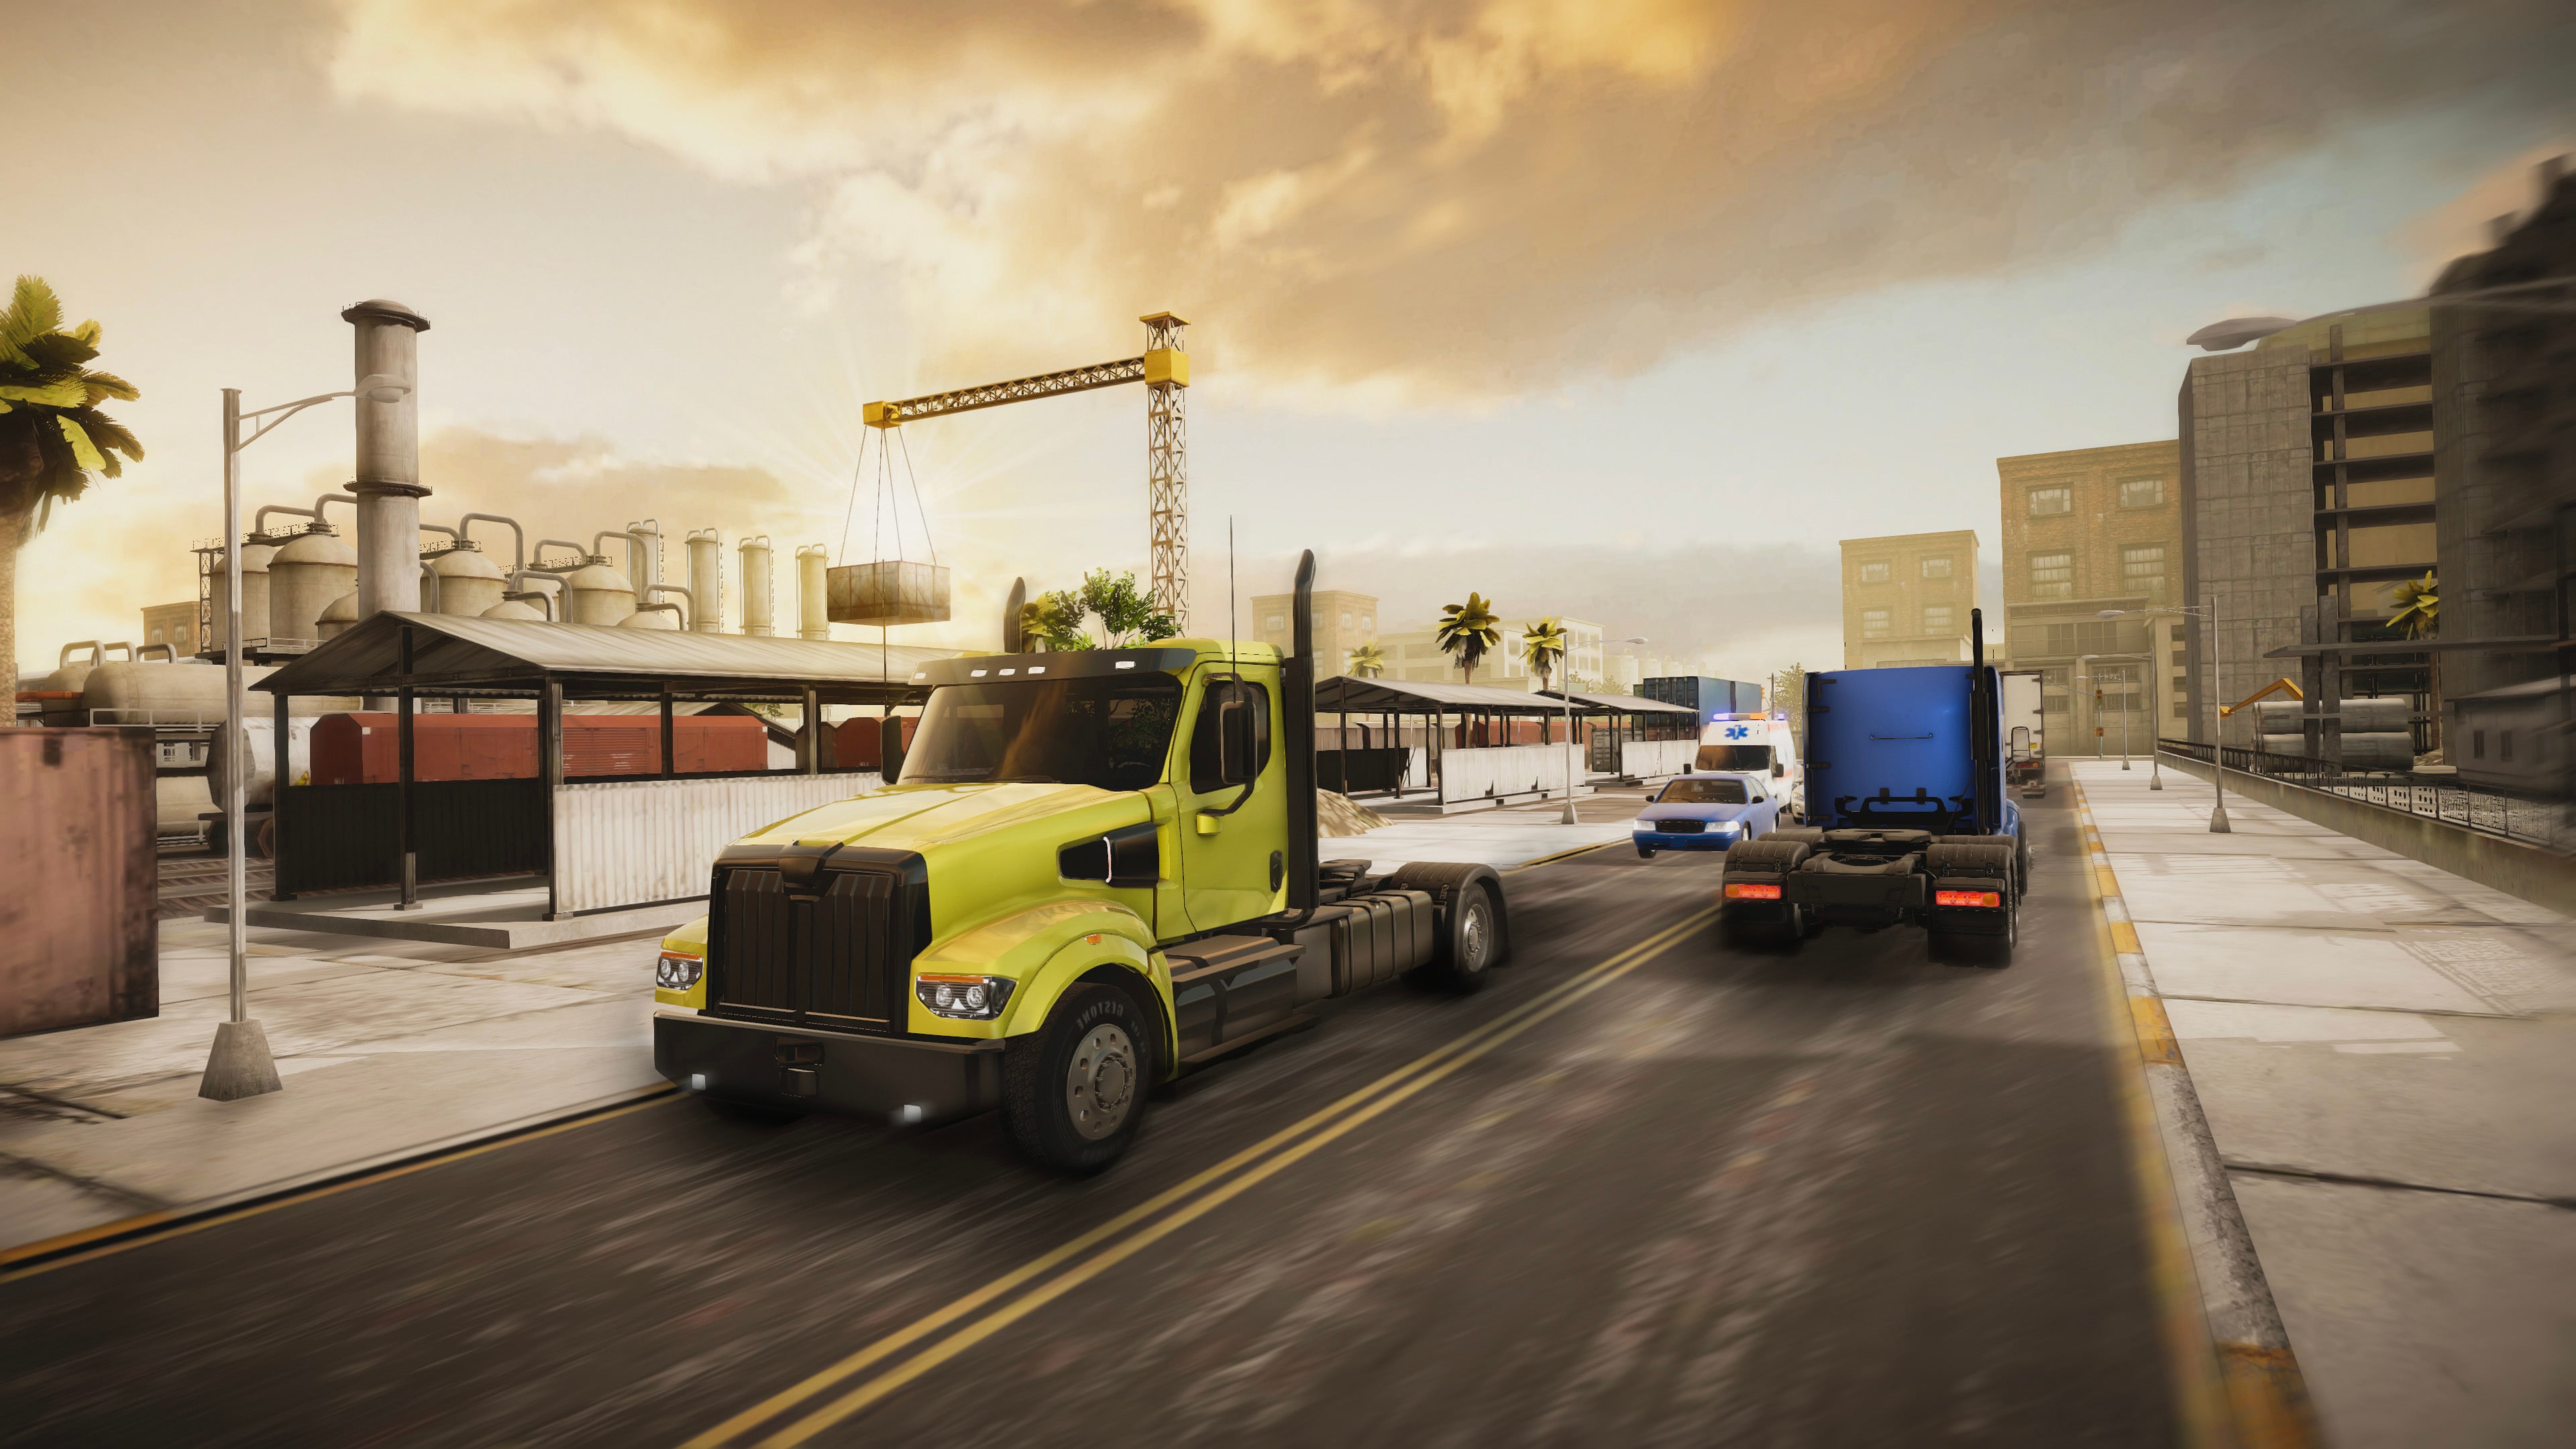 New Truck simulator for PS5?? #trucksimulator #console #truckdriver #ps5  #news 